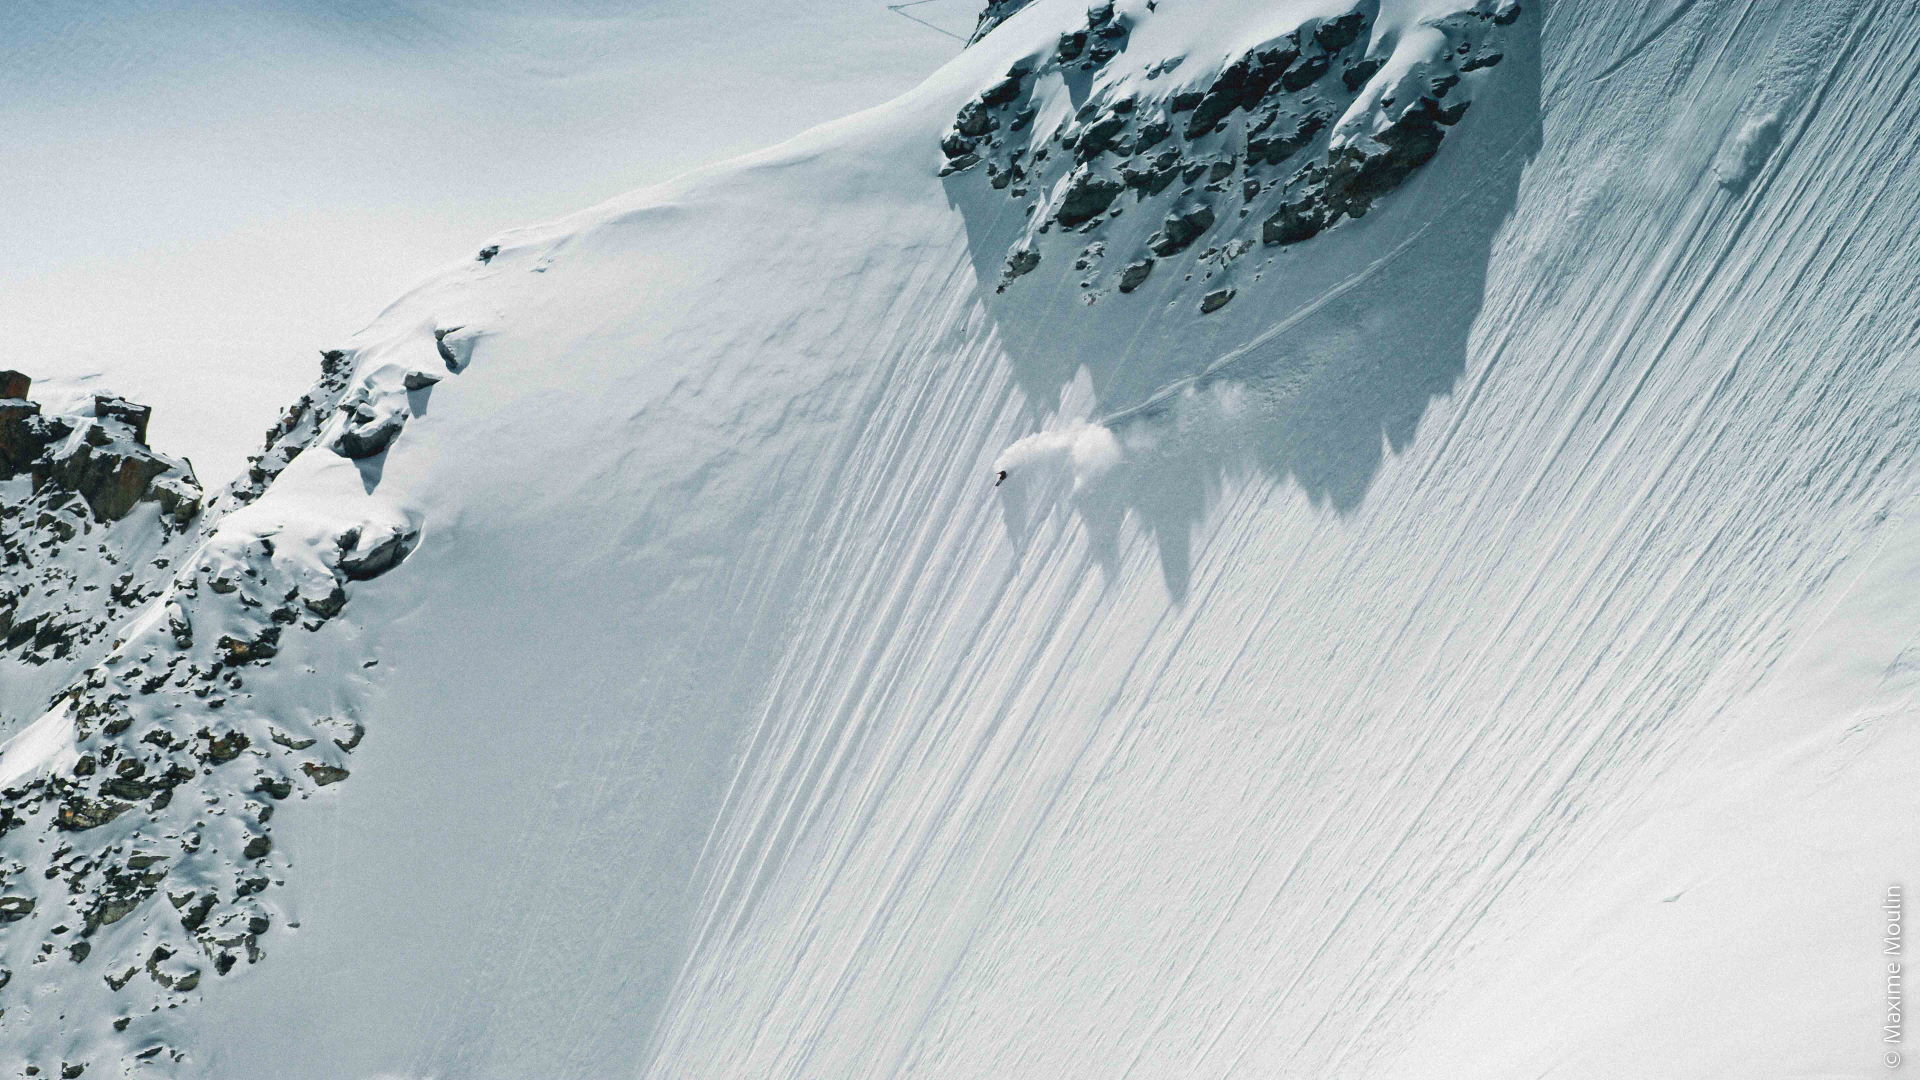 Zum Ende gibt es einen Skifilm, hat auch schon Tradition - Foto: Maxime Moulin